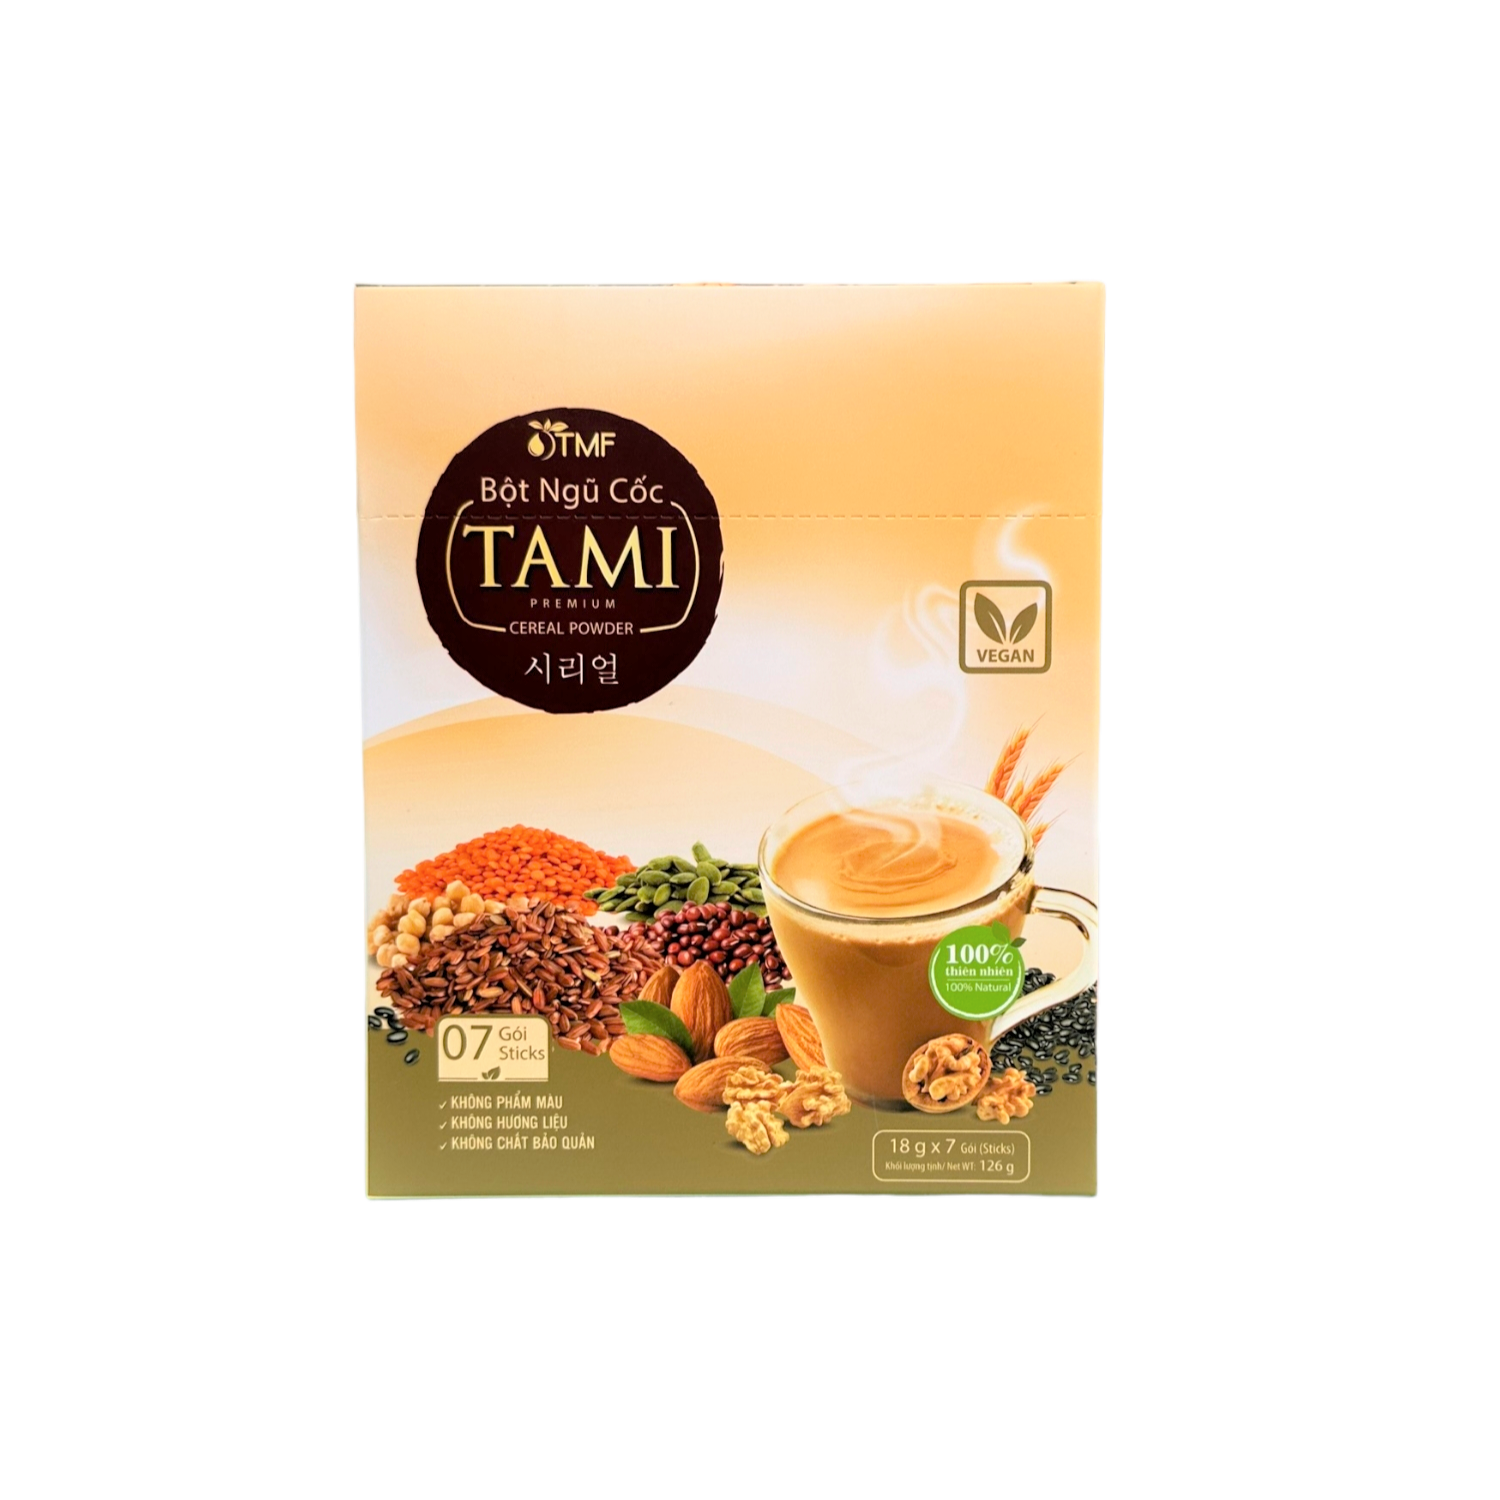 Bột ngũ cốc TAMI 126g